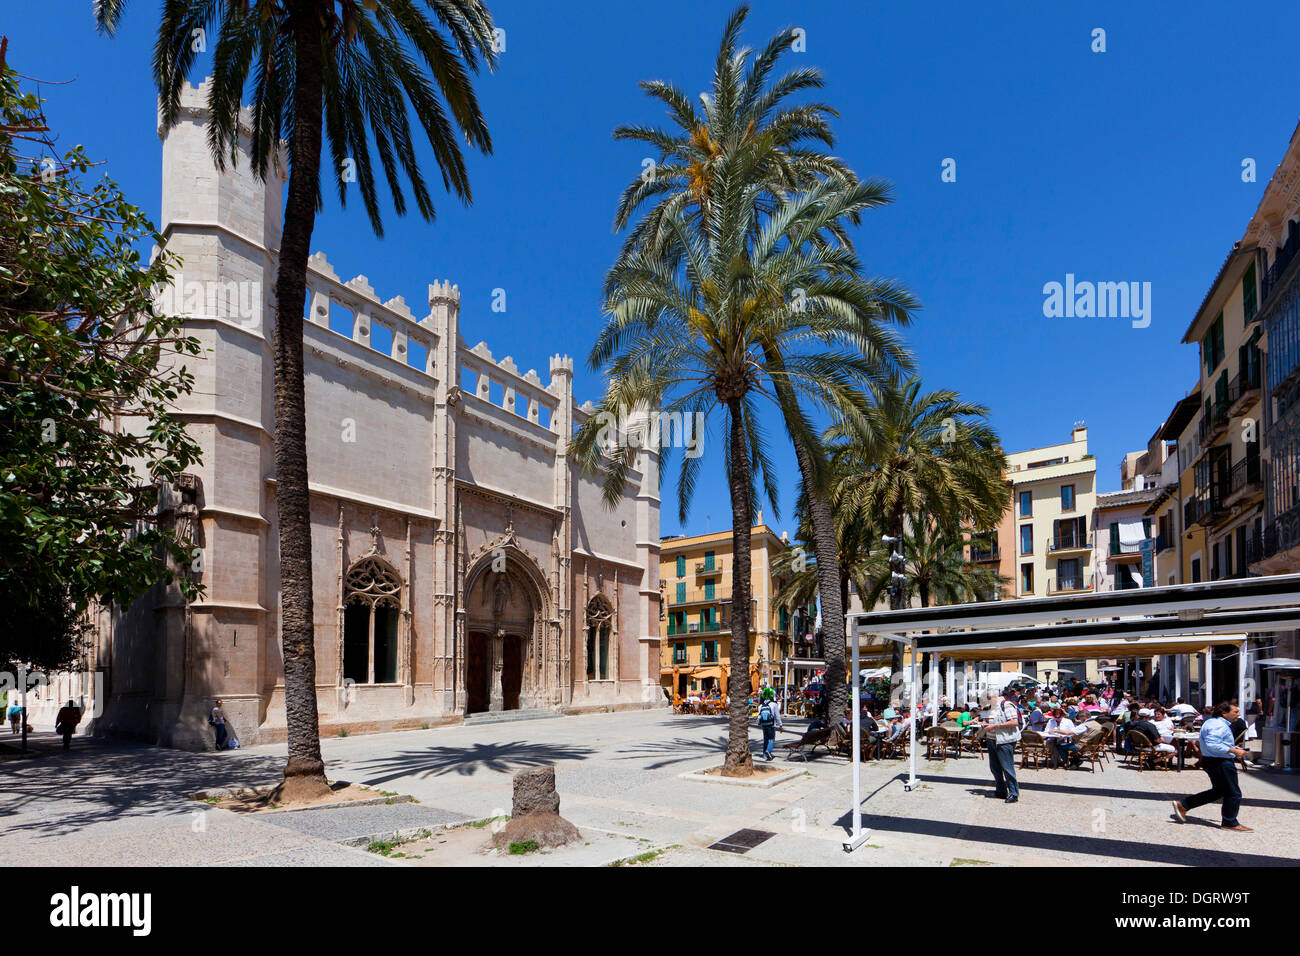 Ancien Sa Llotja commercial maritime change, la façade gothique catalan, en l'espace d'expositions pour les arts et la culture Banque D'Images